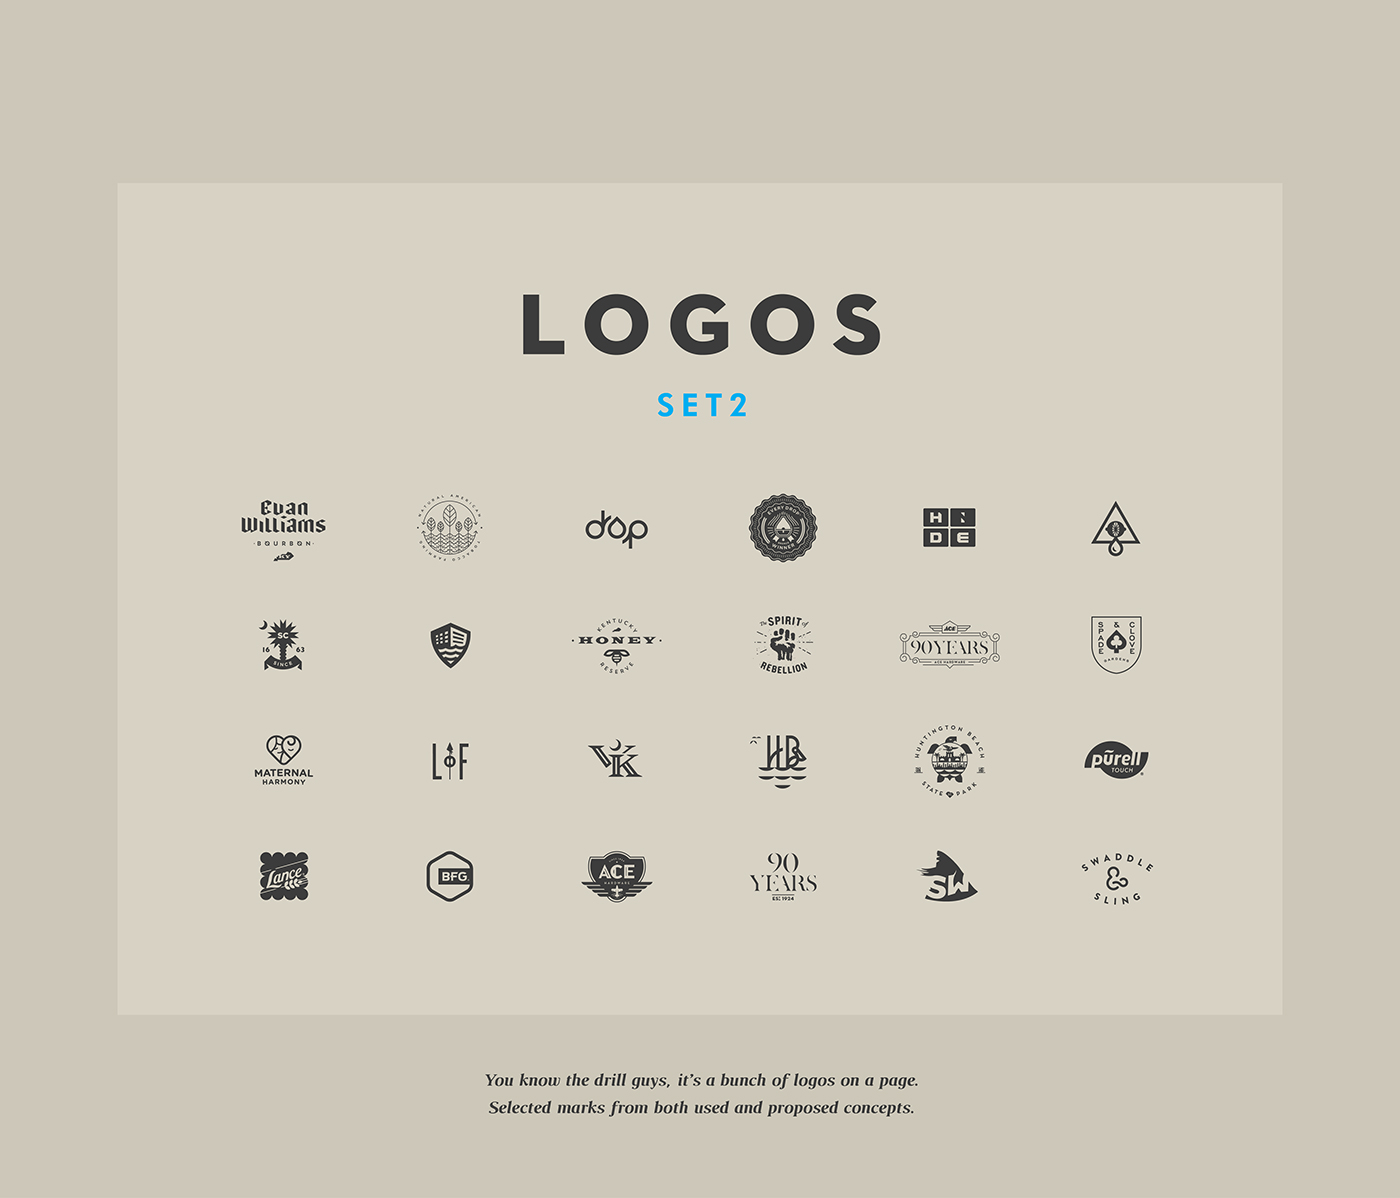 logo logofolio logos brand identity type lettering symbol Icon Logotype Whiskey sharks dog carolina comite